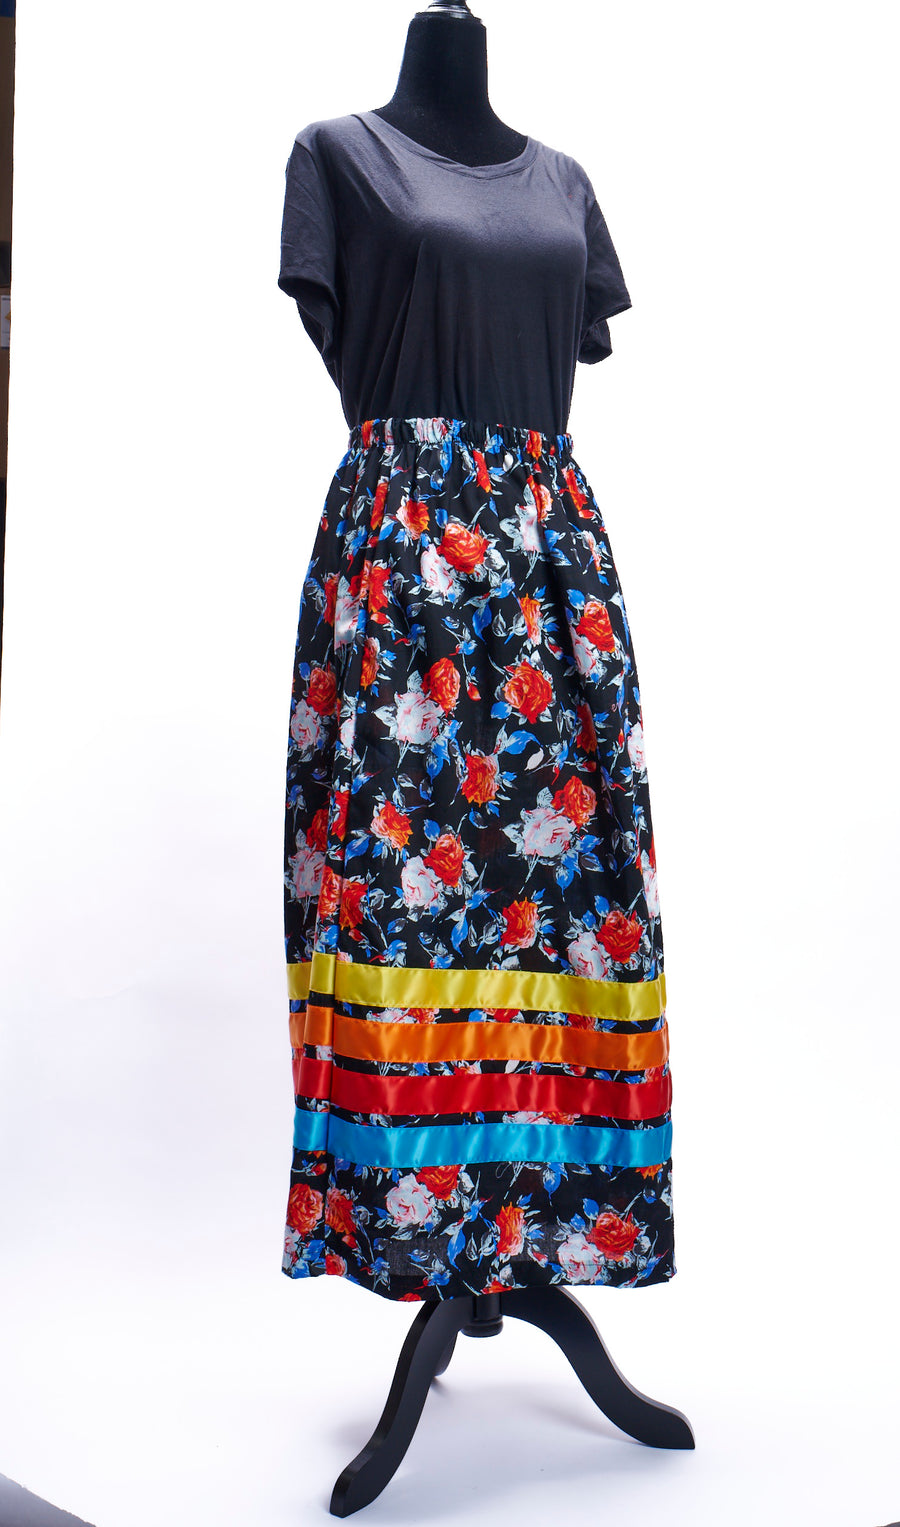 Ribbon Skirt - Flower Design